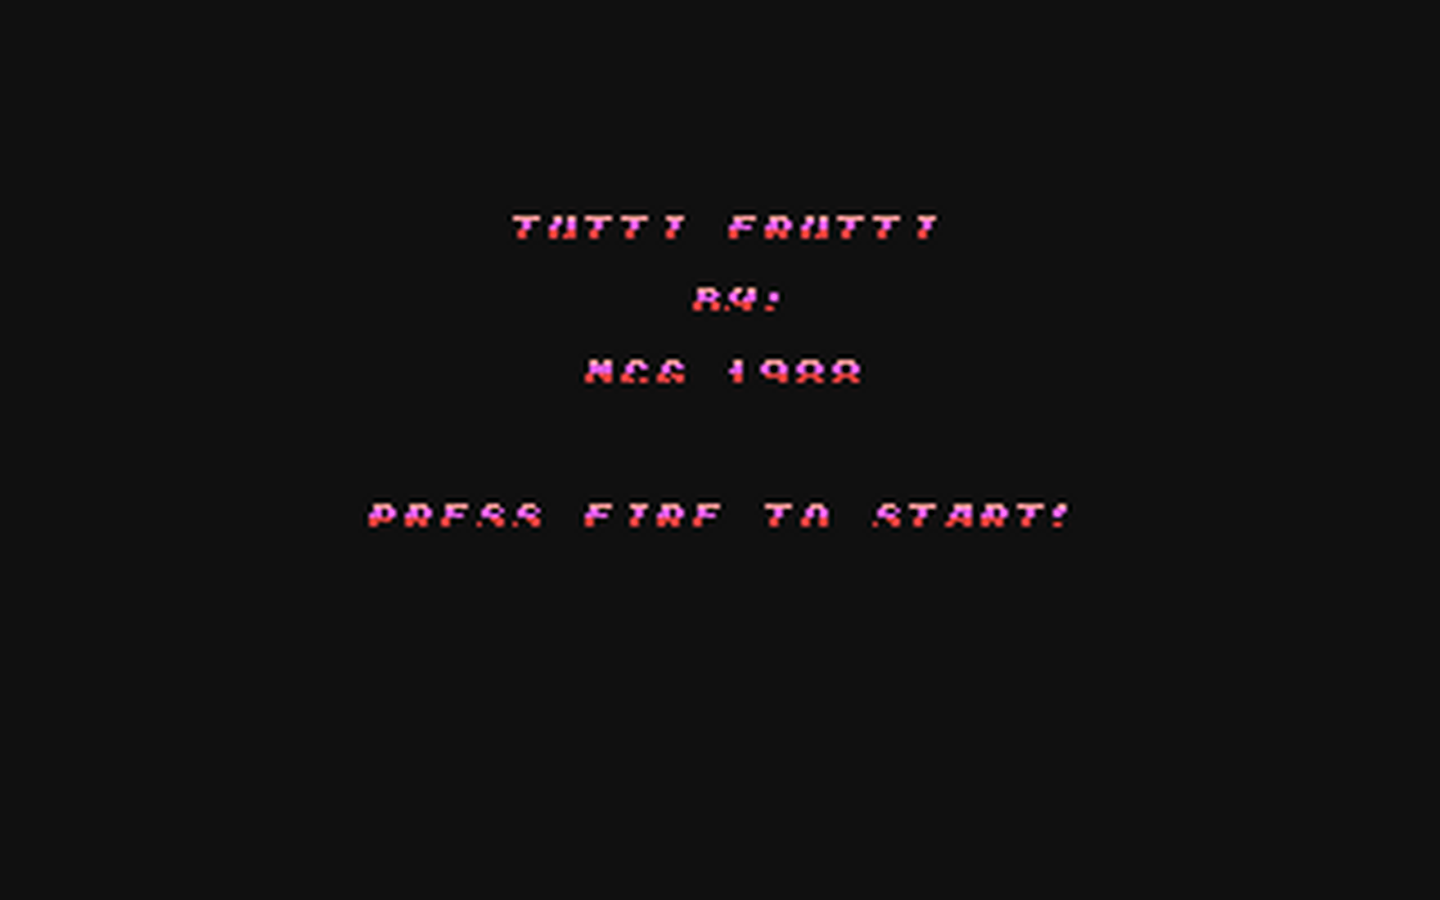 C64 GameBase Tutti_Frutti (Created_with_SEUCK) 1988